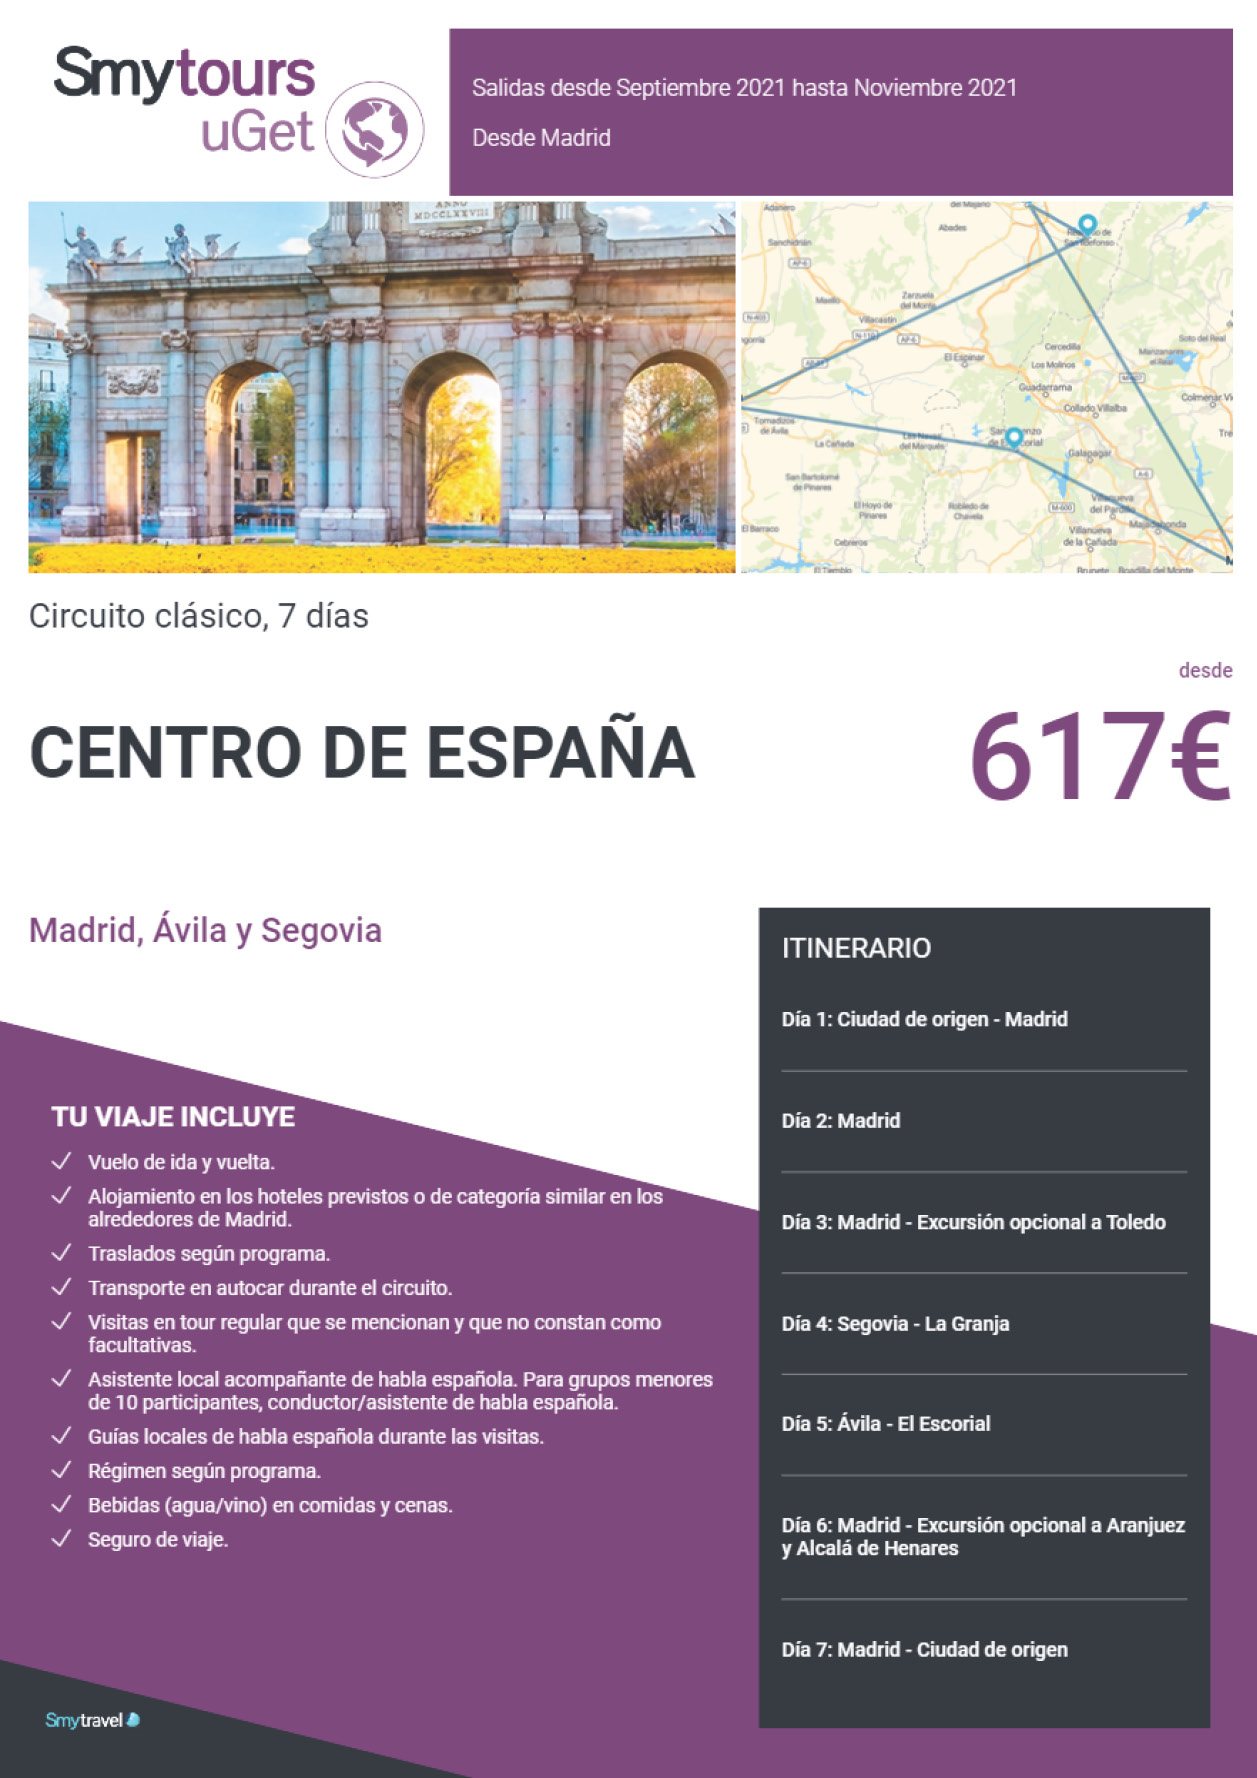 Oferta Smytravel Circuito Madrid Avila y Segovia 7 dias salidas desde Barcelona desde 714 €